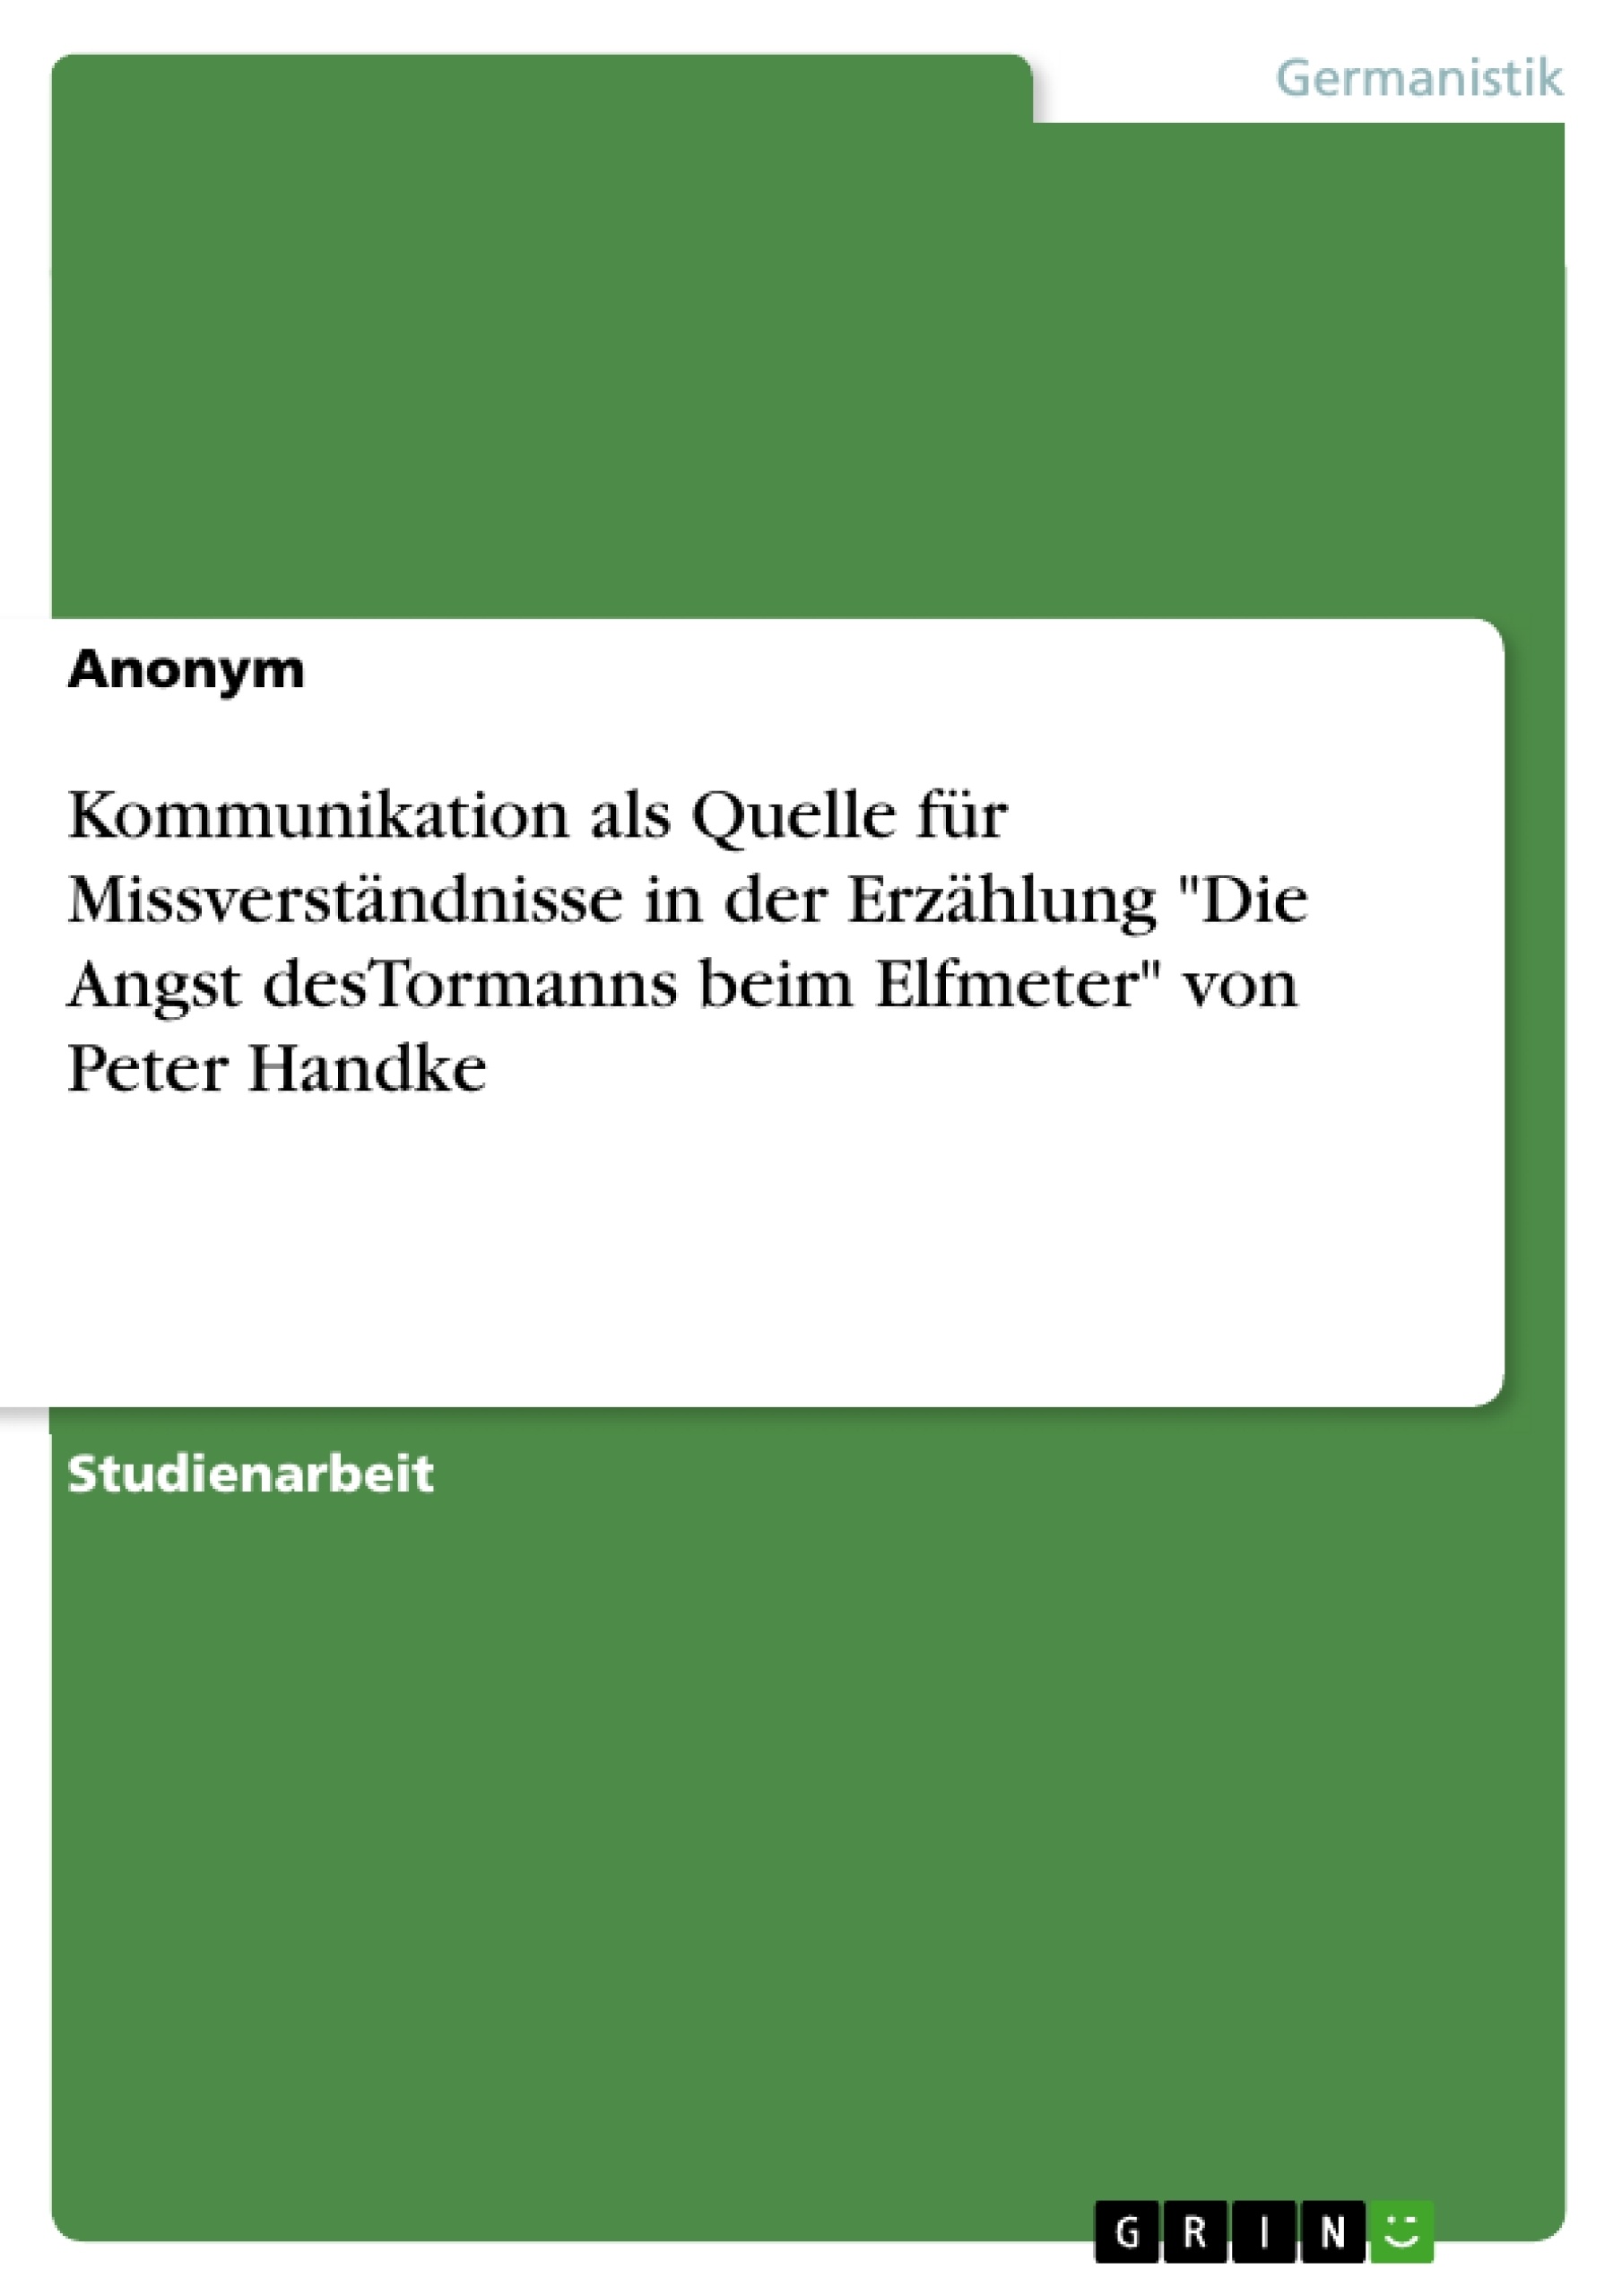 Titel: Kommunikation als Quelle für Missverständnisse in der Erzählung "Die Angst desTormanns beim Elfmeter" von Peter Handke 